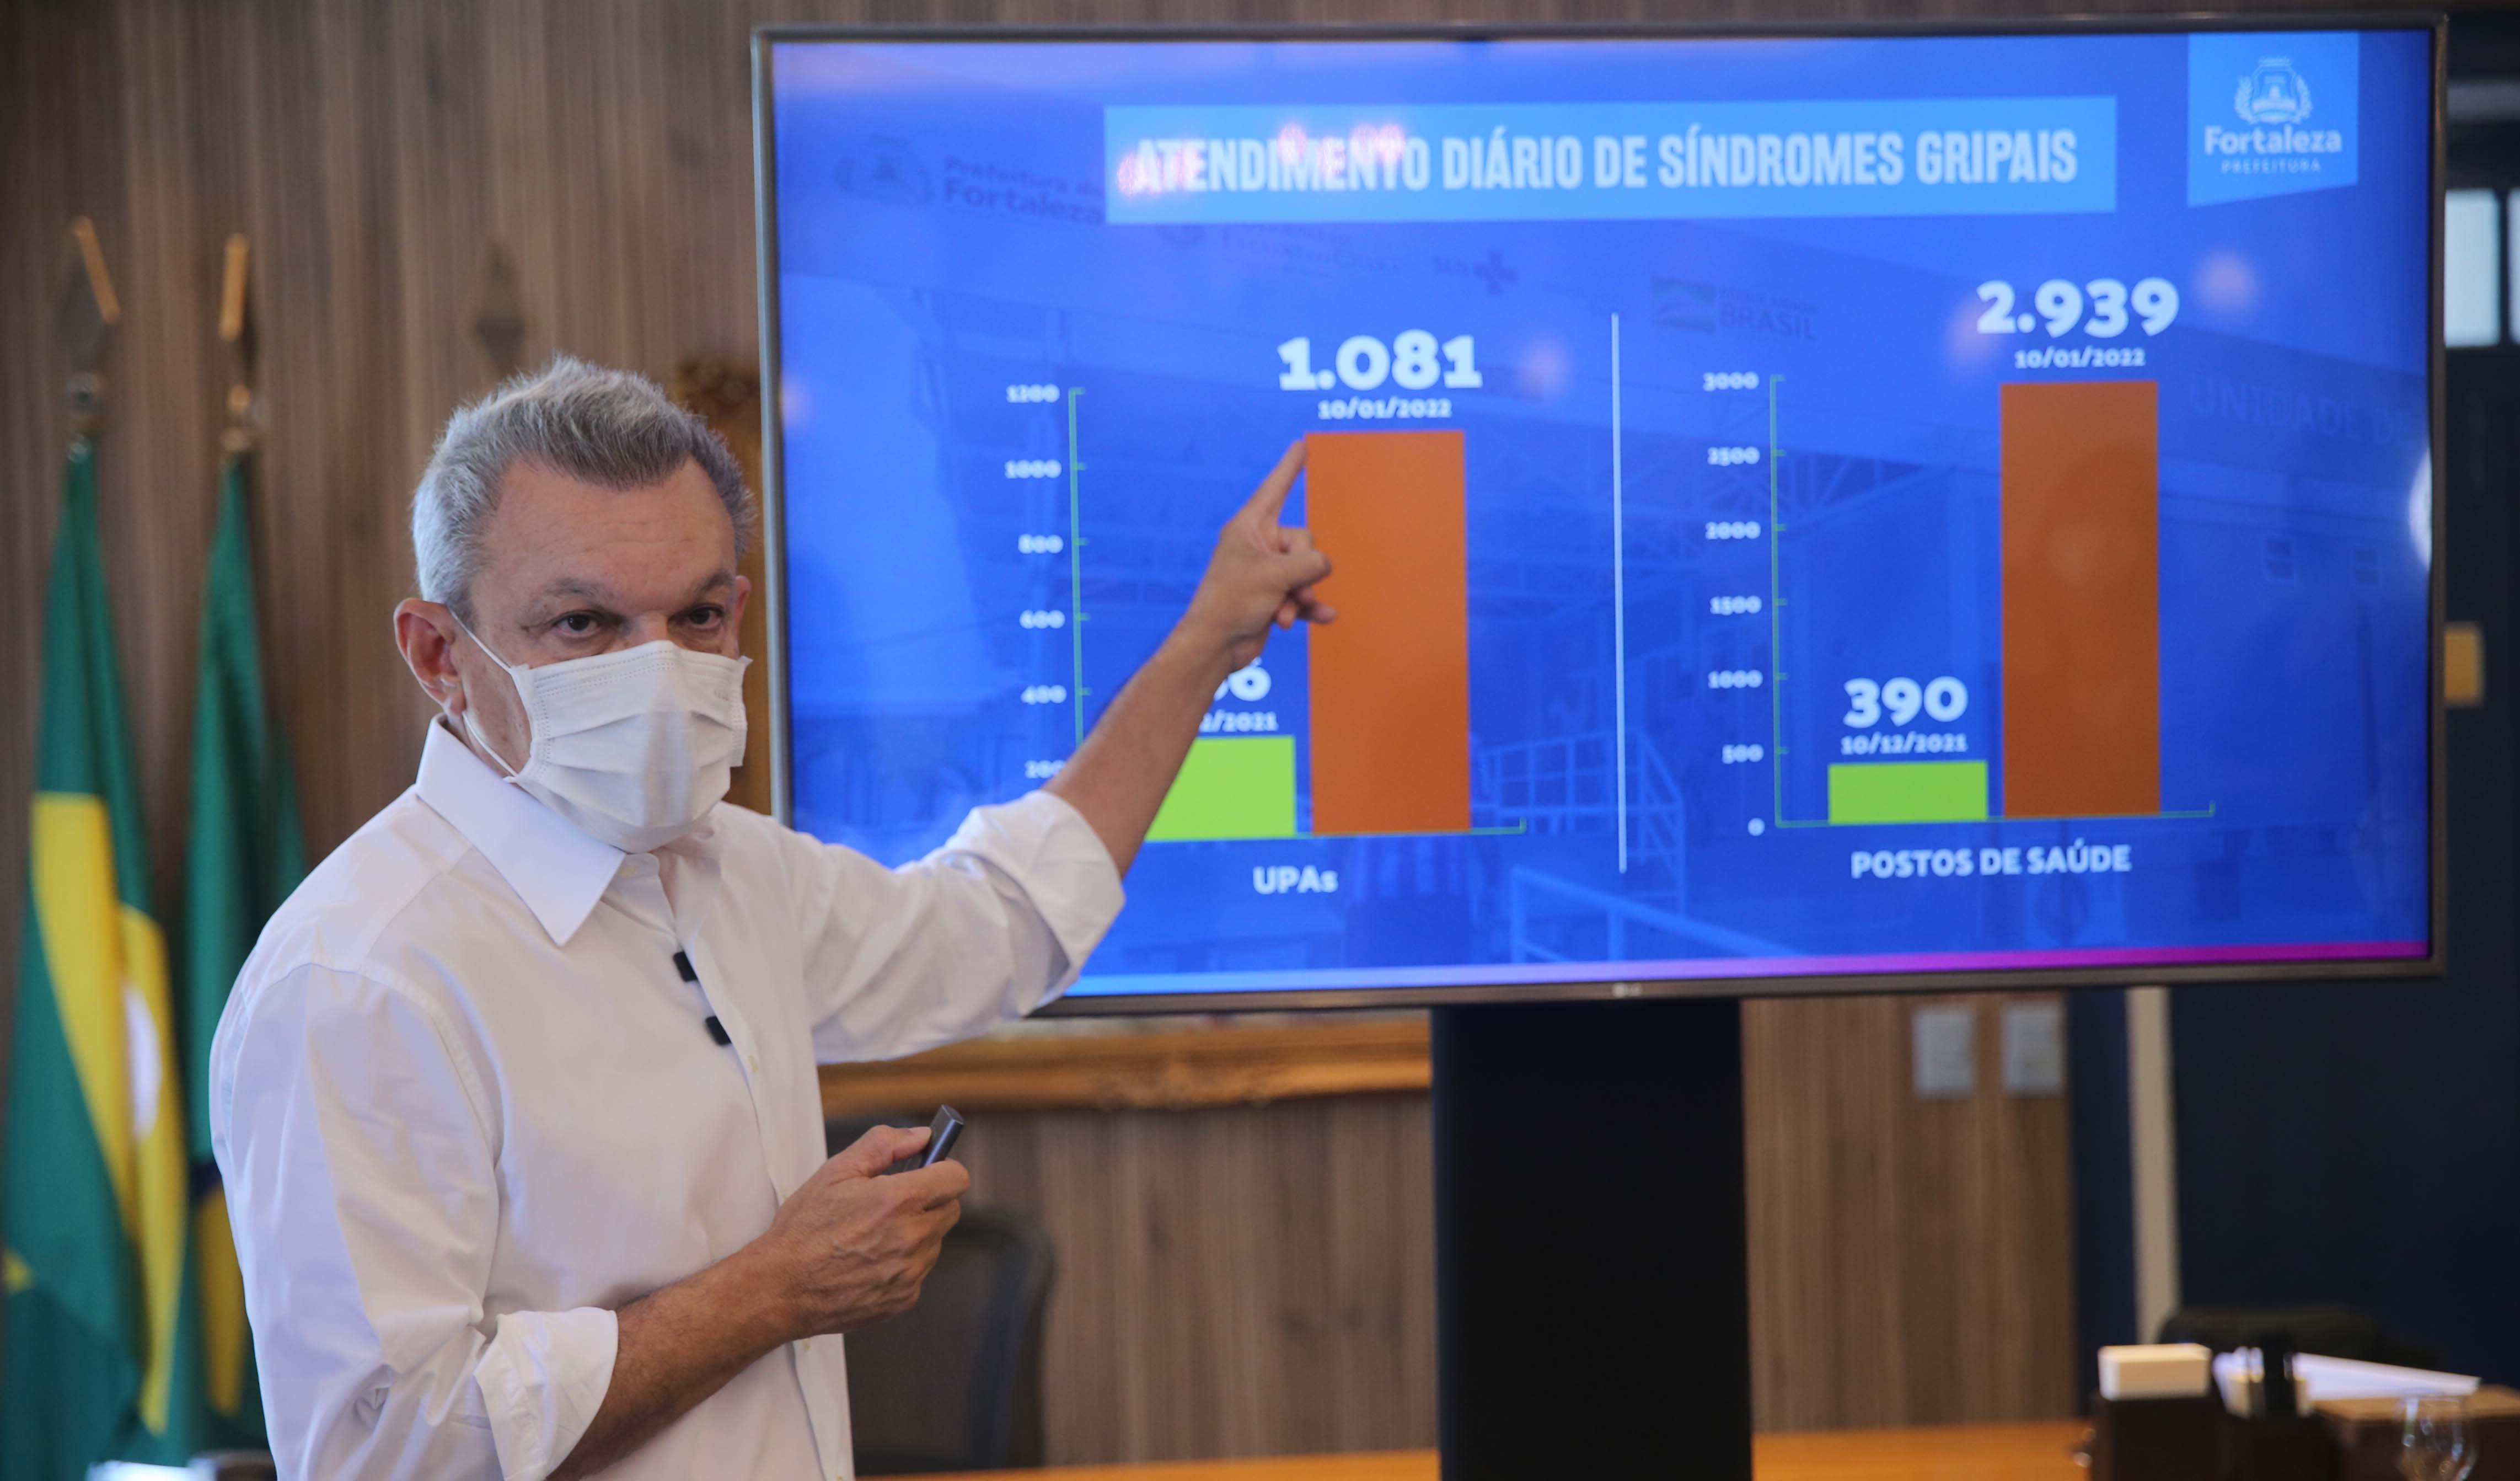 prefeito na frente da tela de apresentação que mostra o gráfico de internamentos em upas e postos de saúde